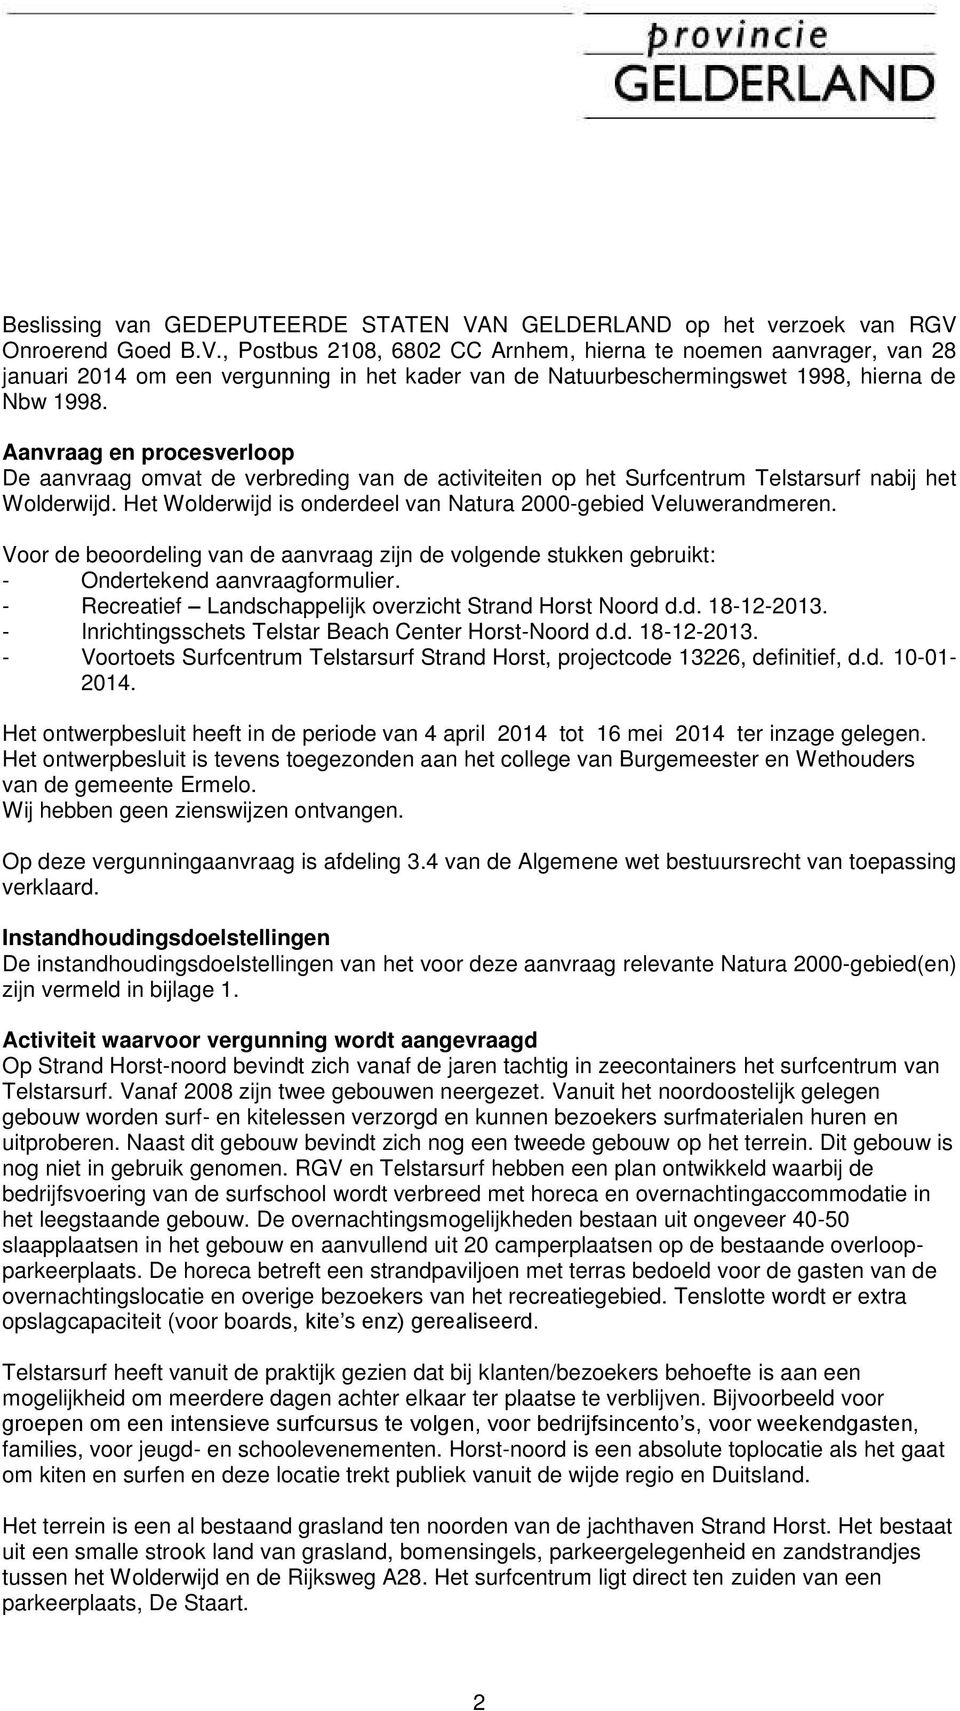 Onroerend Goed B.V., Postbus 2108, 6802 CC Arnhem, hierna te noemen aanvrager, van 28 januari 2014 om een vergunning in het kader van de Natuurbeschermingswet 1998, hierna de Nbw 1998.